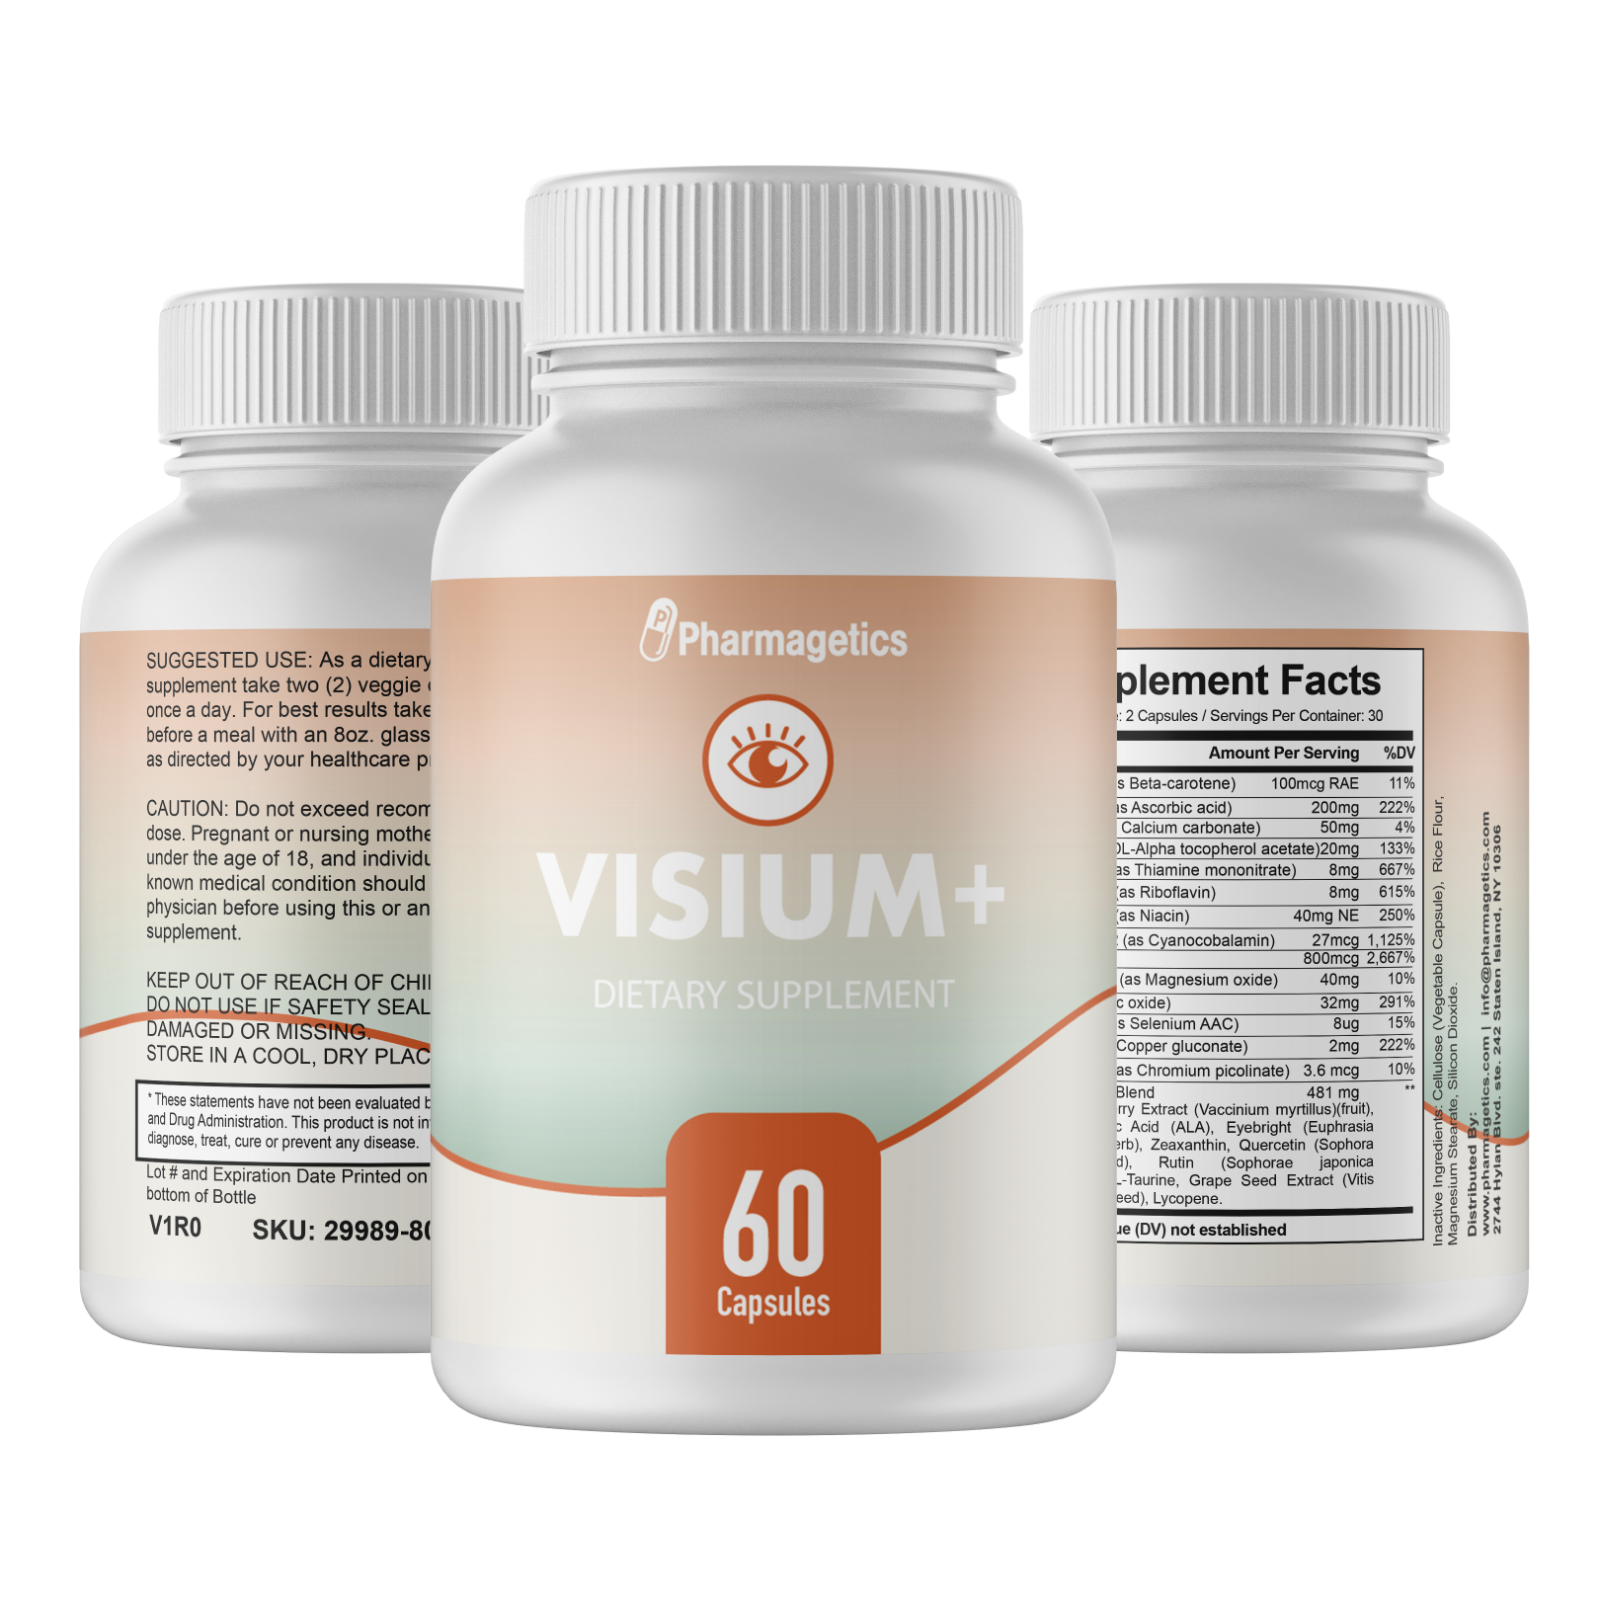 Visium Plus- Vision Support Supplement 2 Bottles 120 Capsules